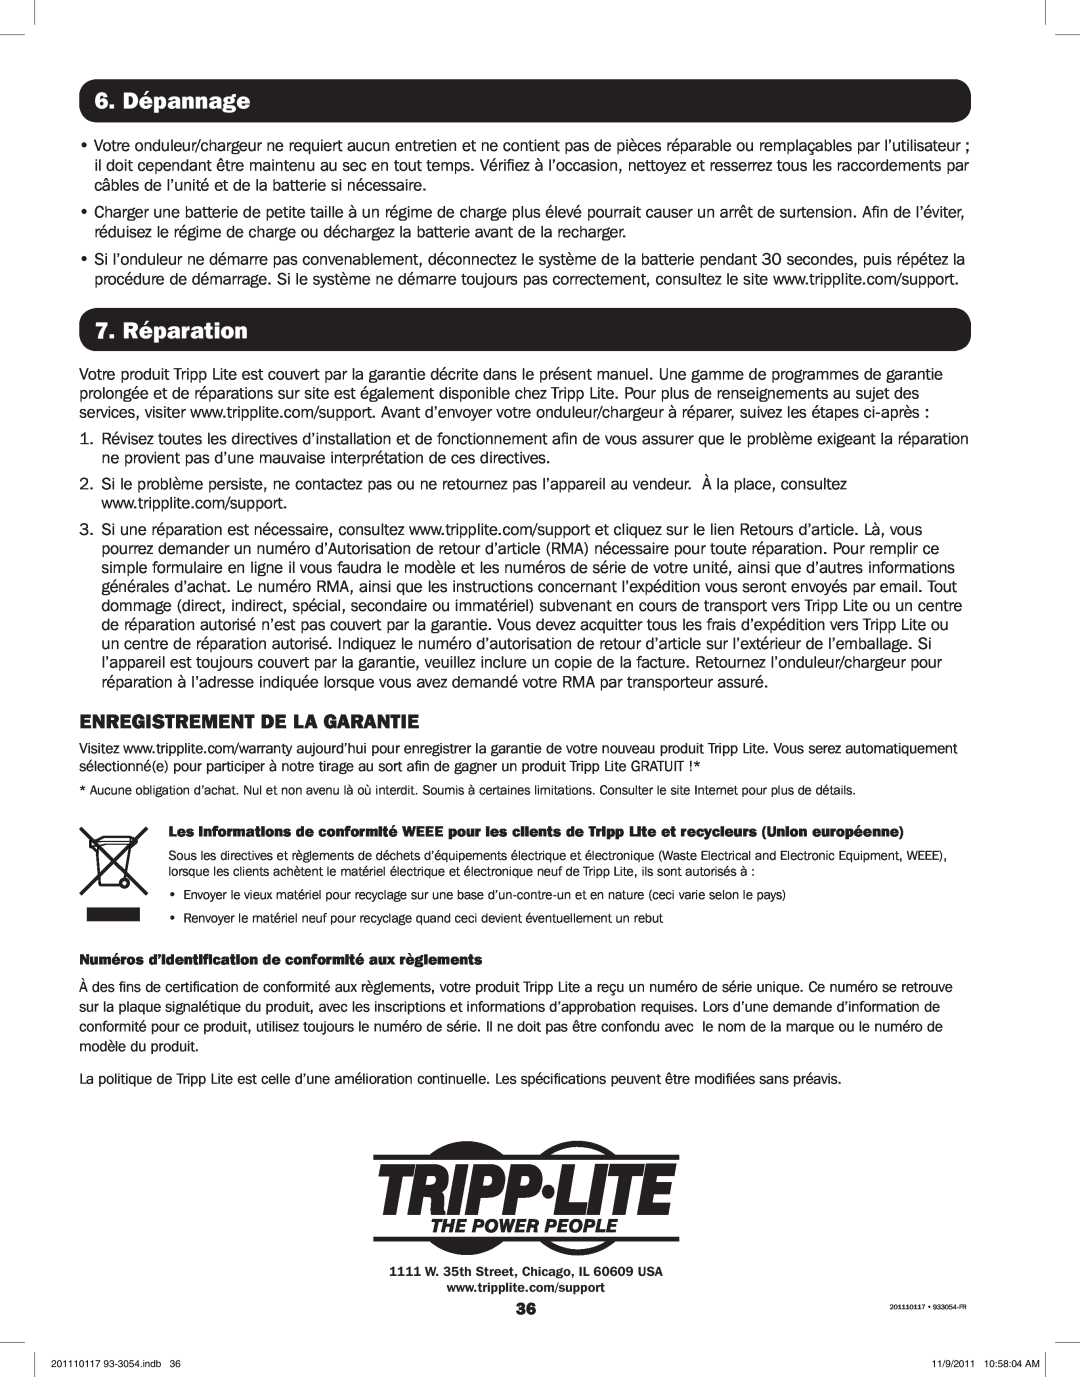 Tripp Lite APSX1012SW, APSX2012SW owner manual 6. Dépannage, 7. Réparation, Enregistrement De La Garantie 